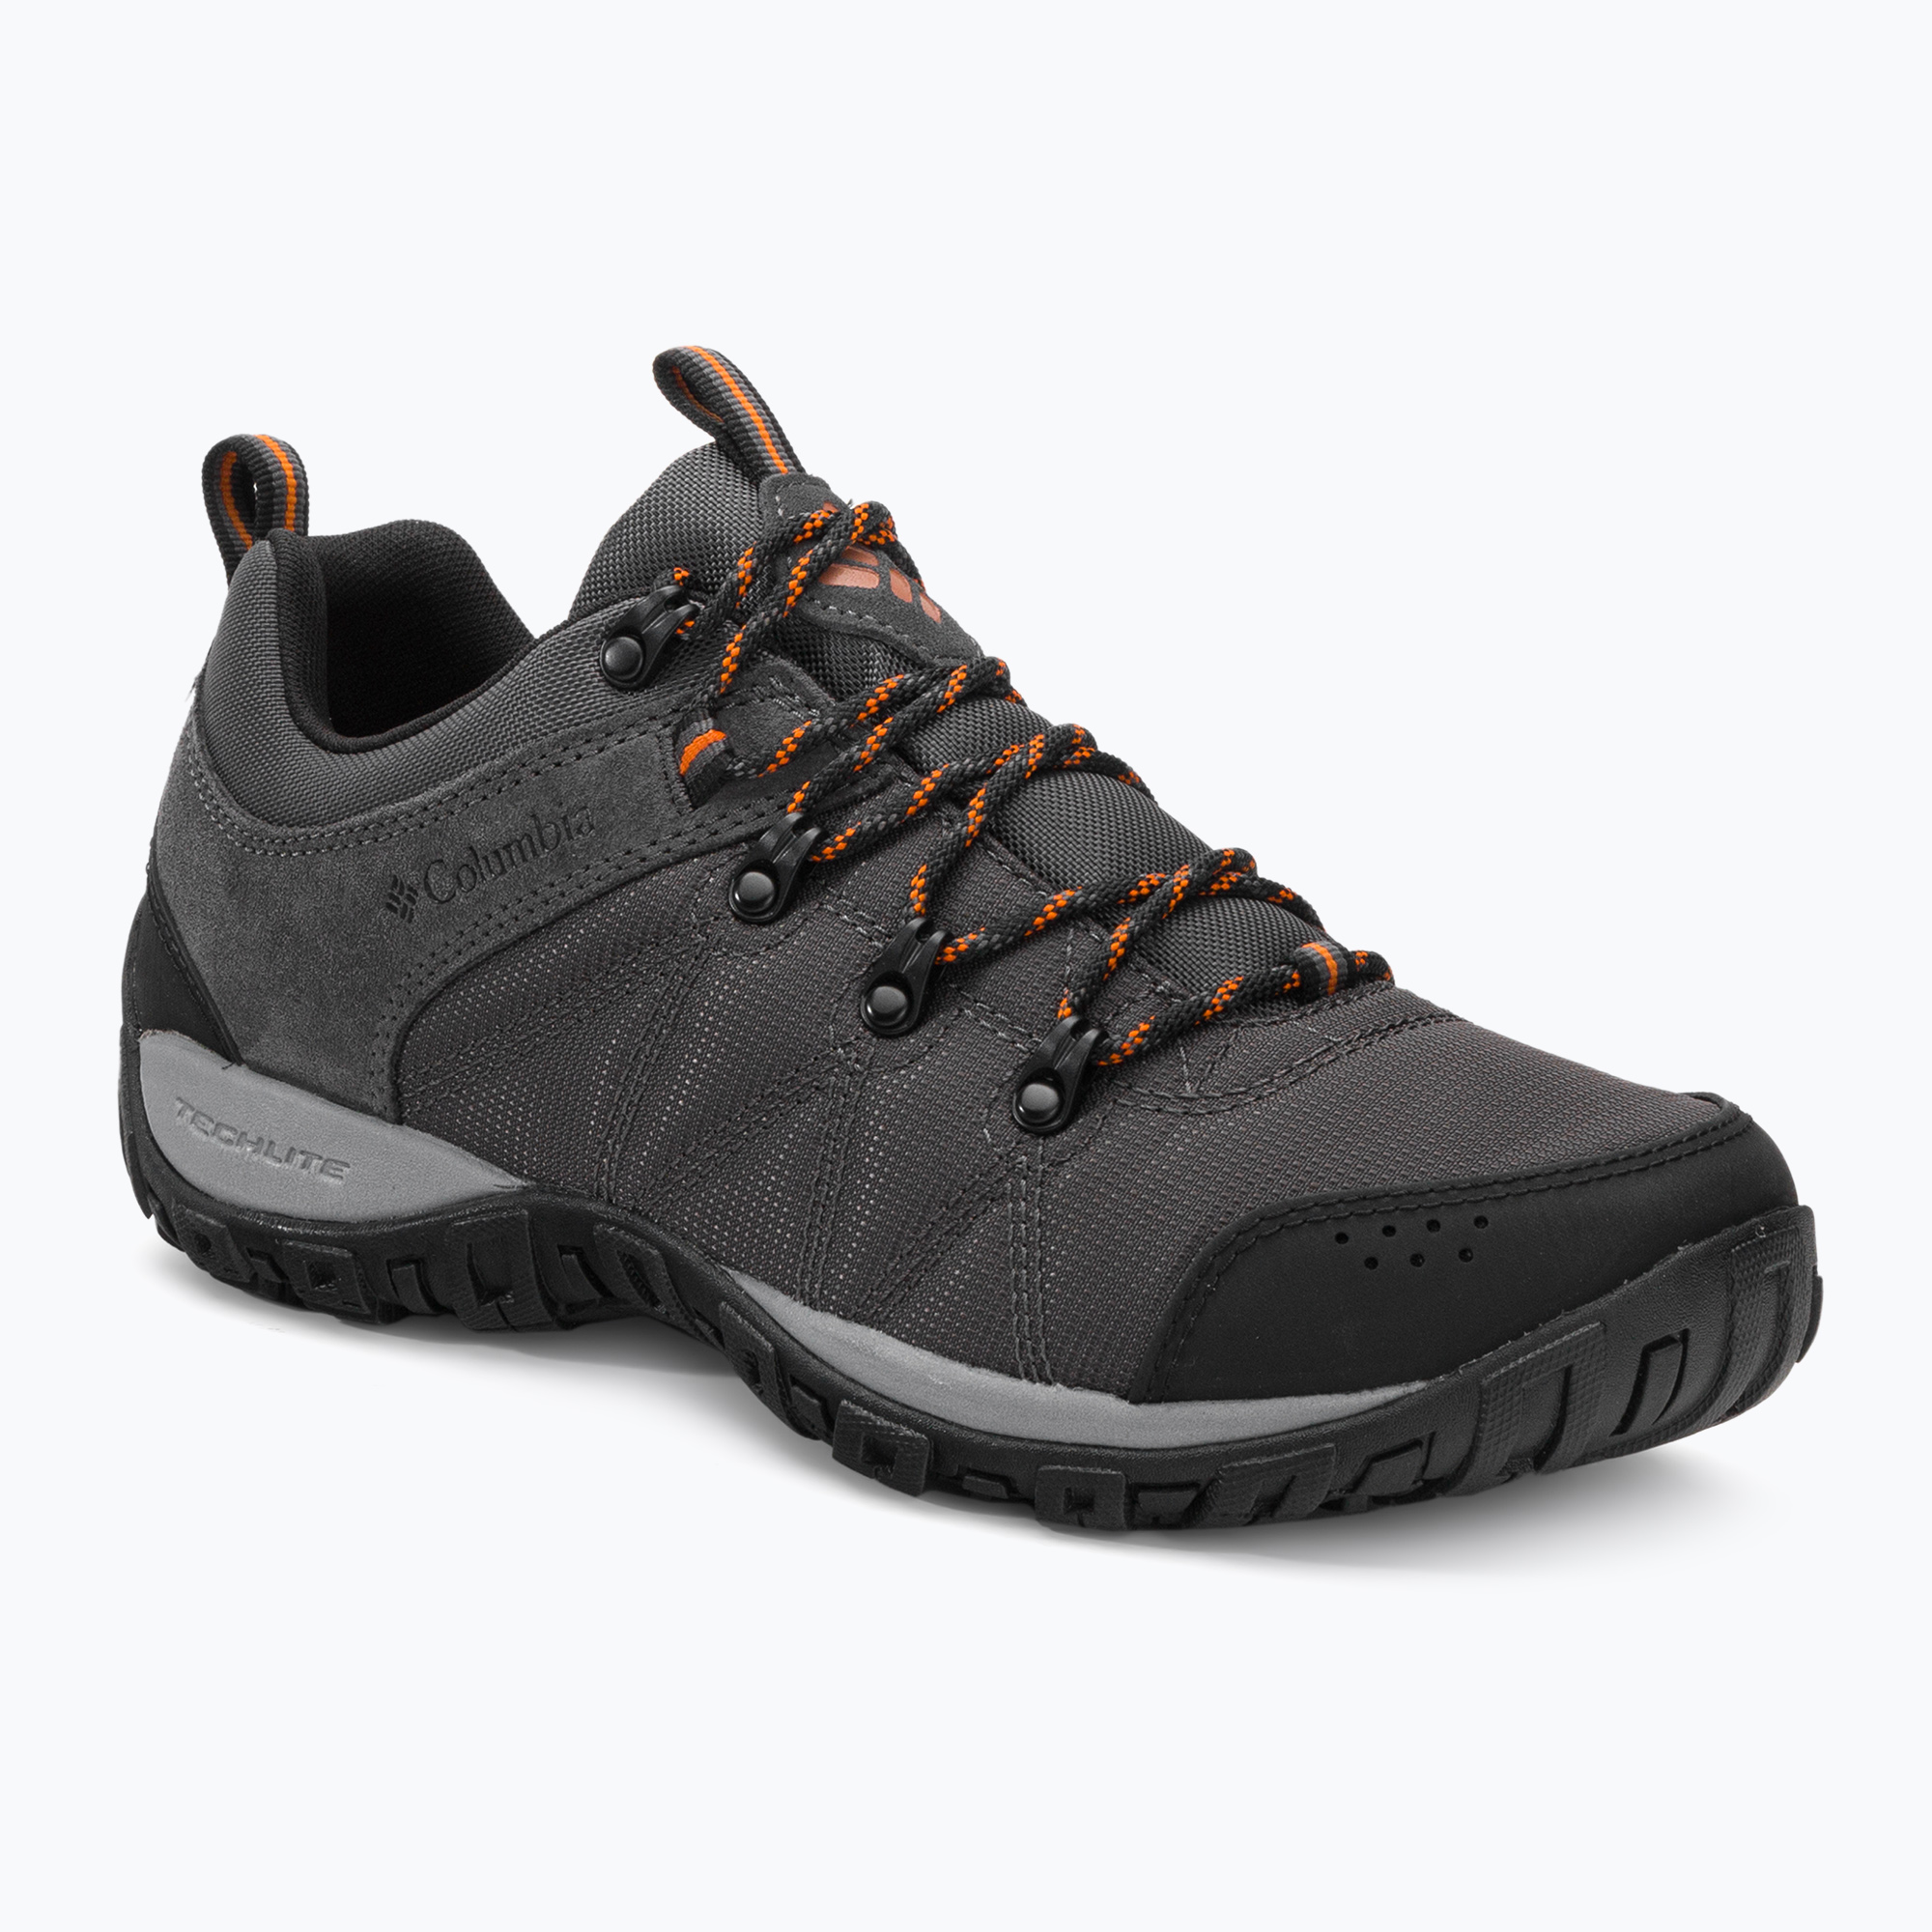 Columbia Peakfreak Venture LT grey men's trekking boots 1718181011